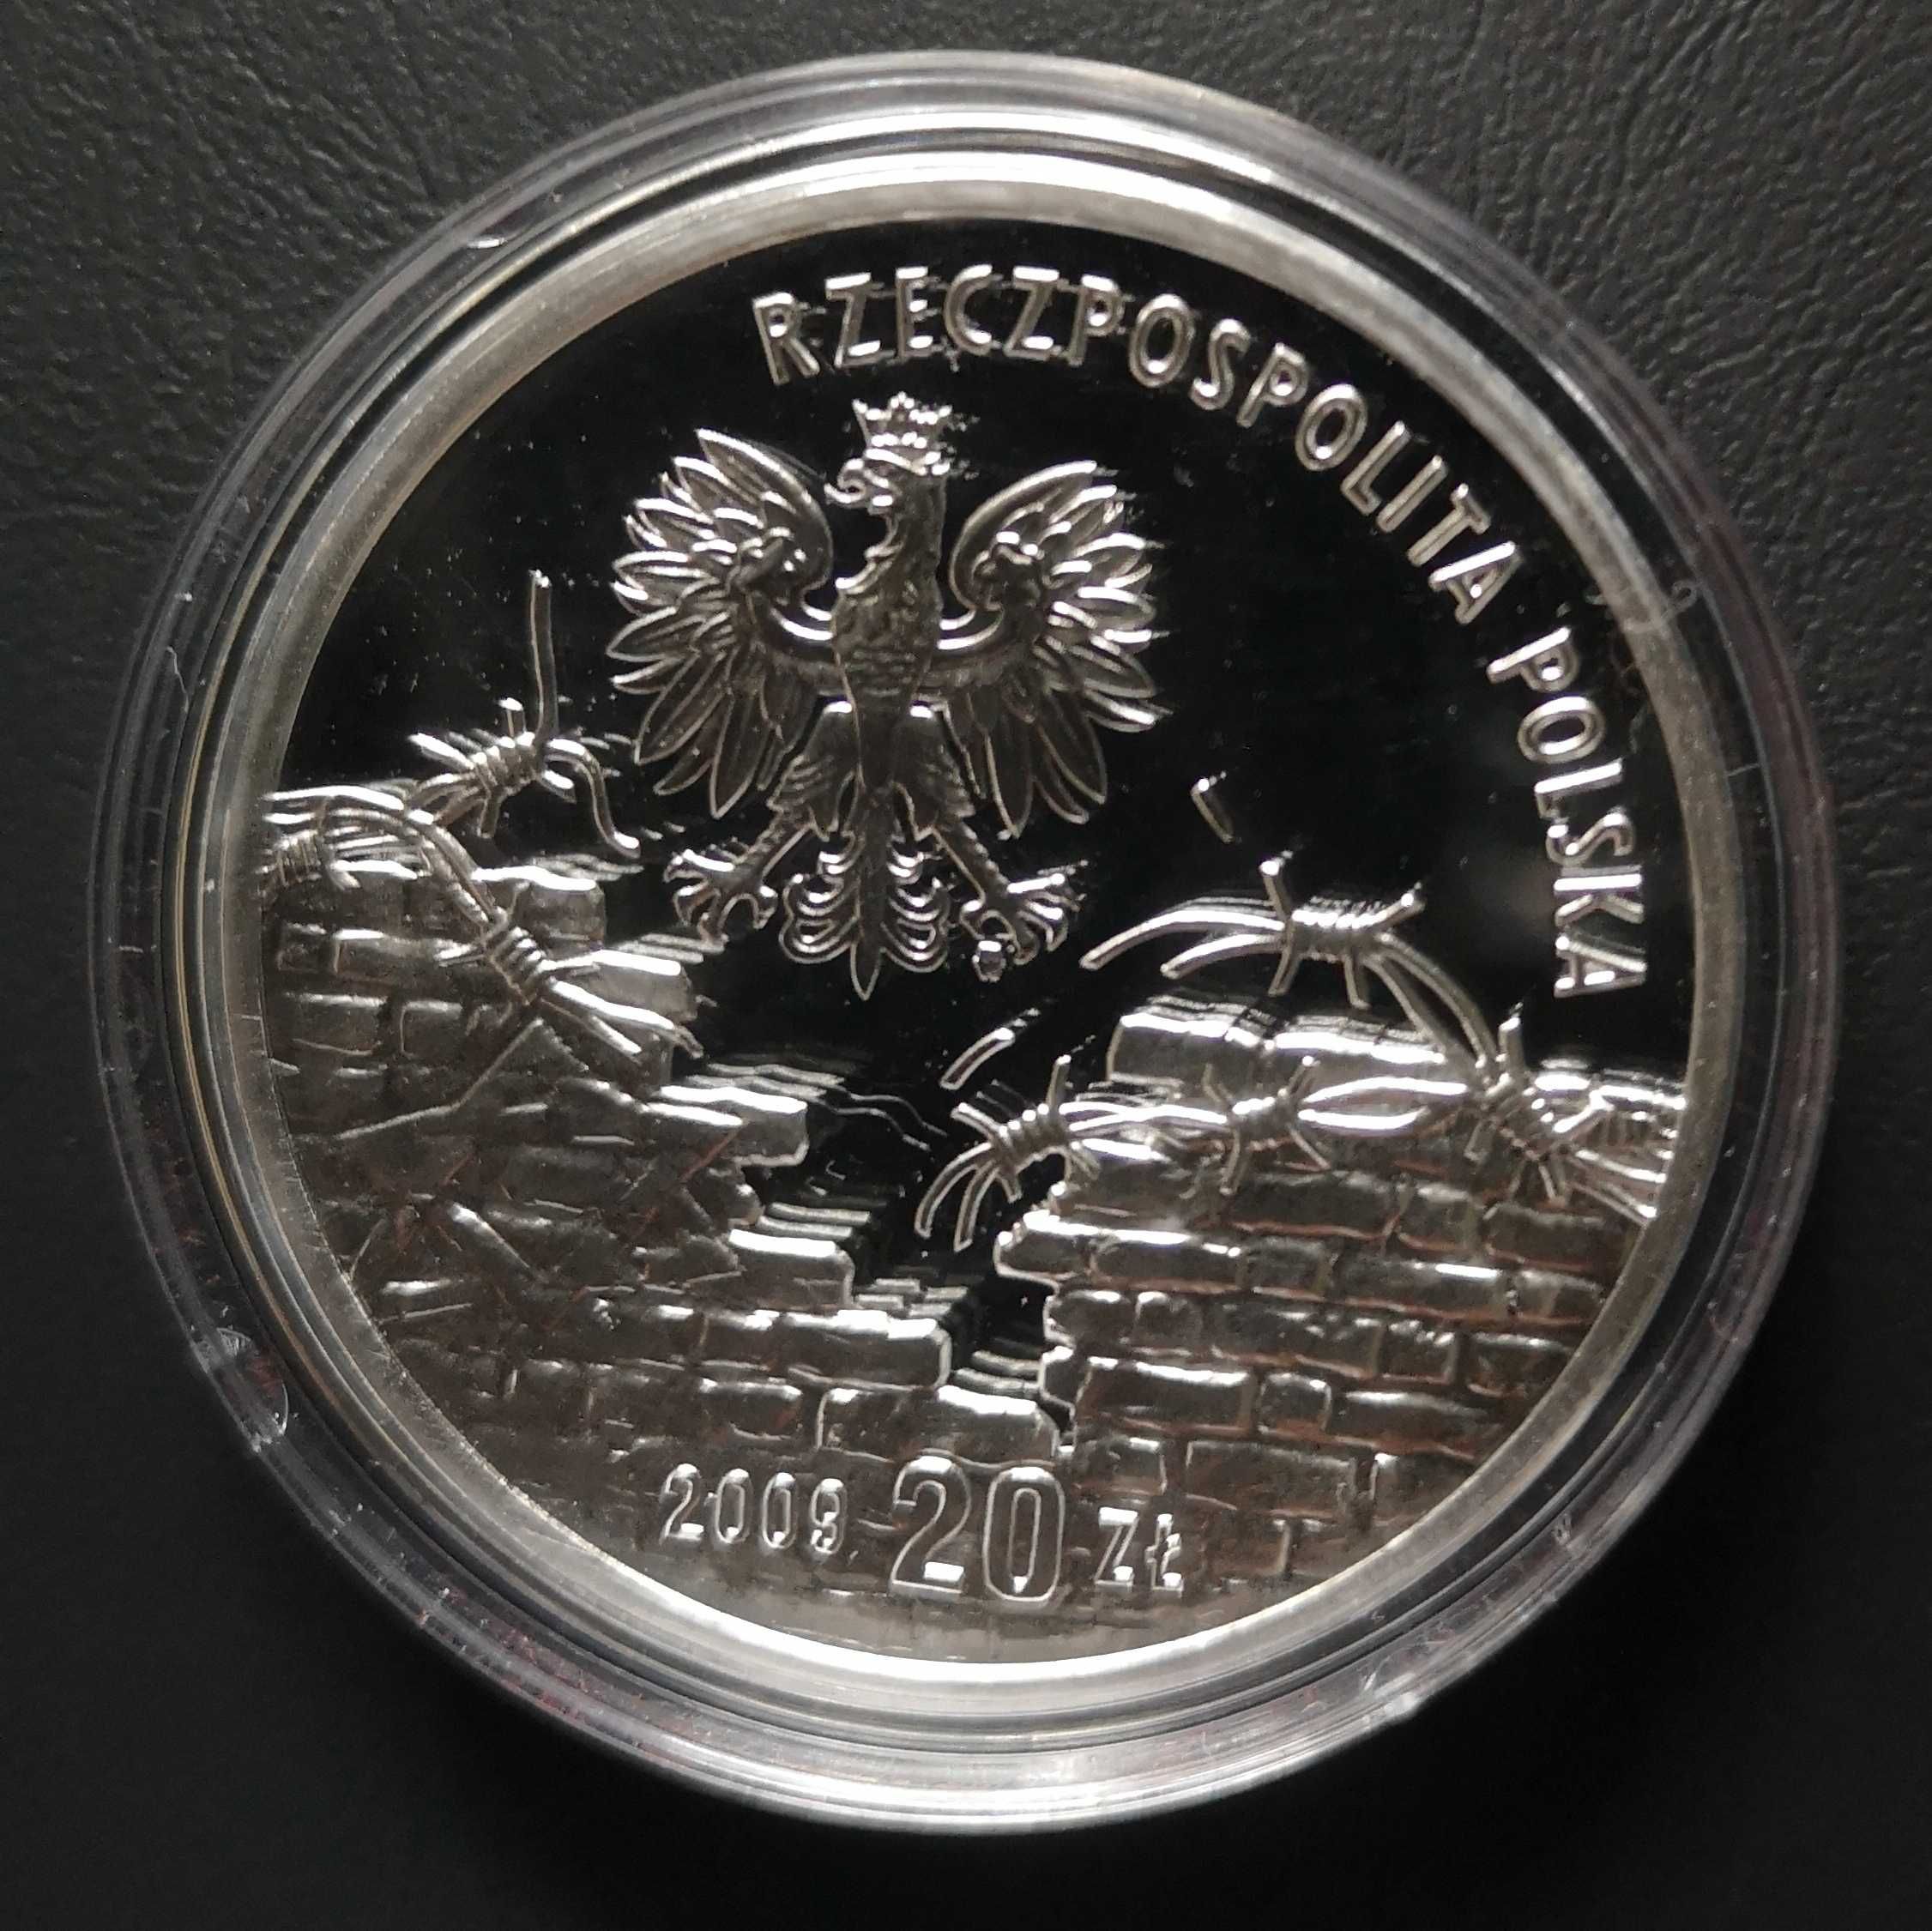 Moneta kolekcjonerska 20 zł 2009 r. Polacy ratujący Żydów